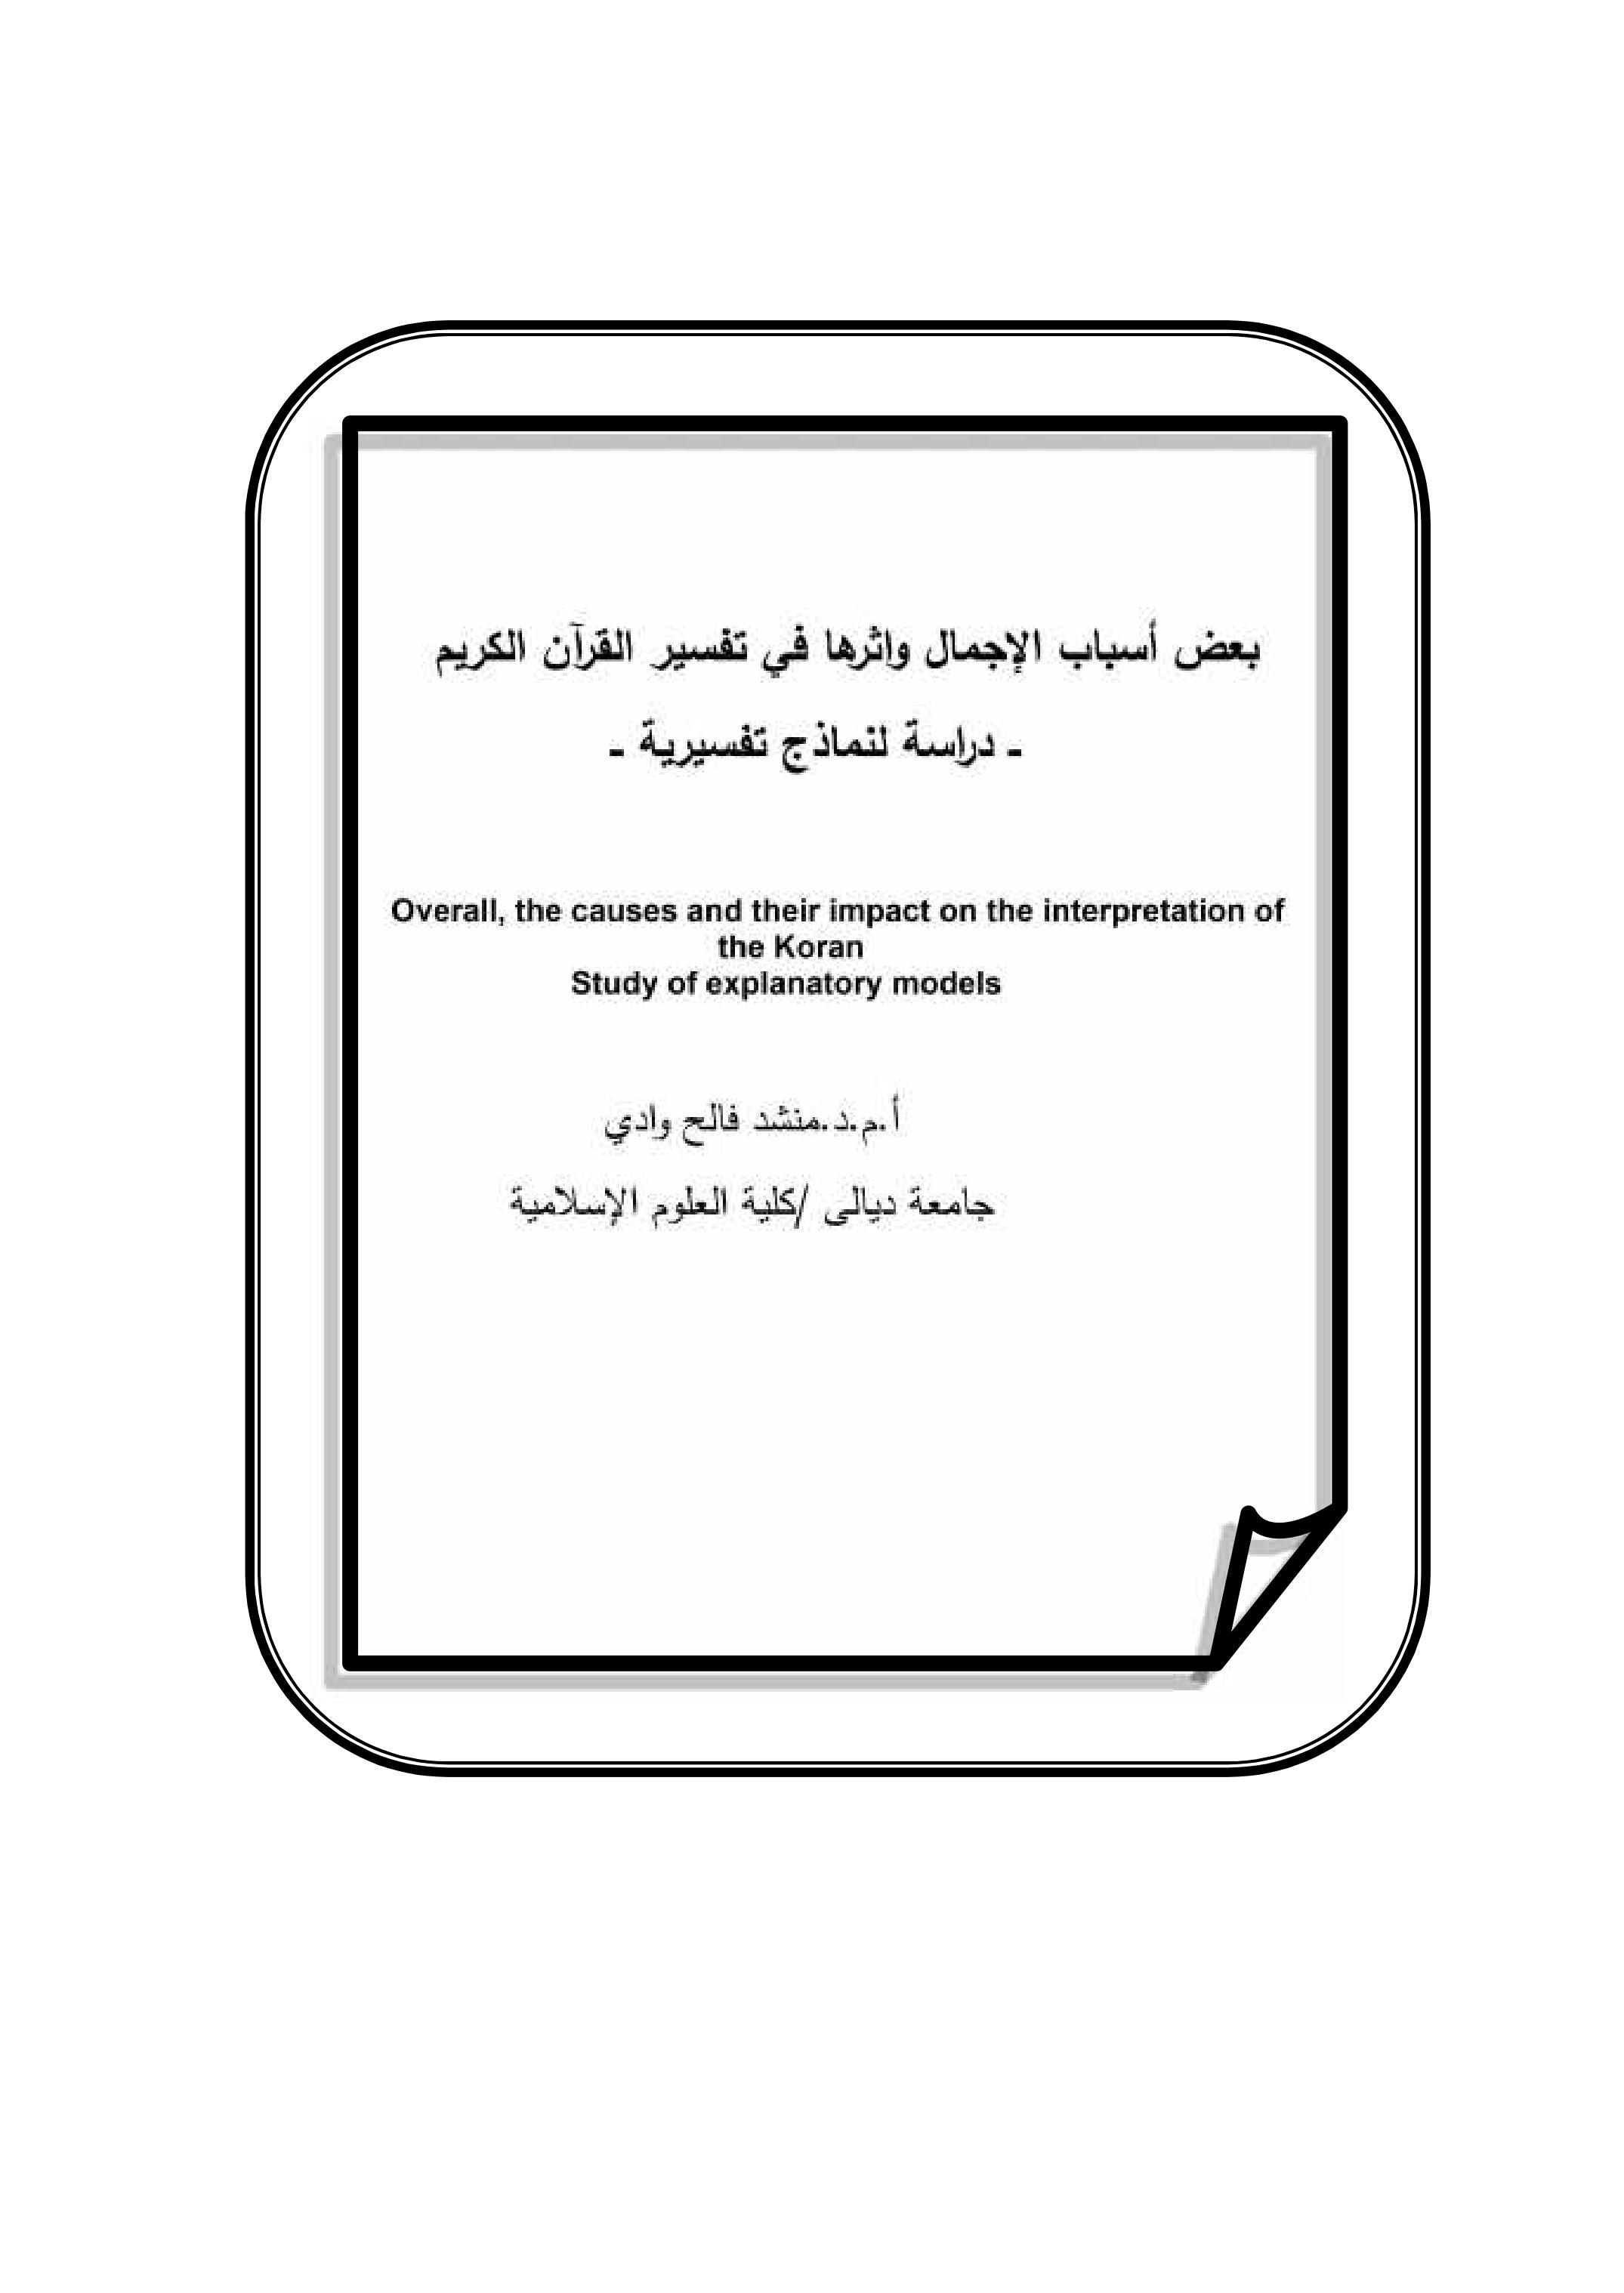 بعض أسباب الإجمال واثرها في تفسیر القرآن الكریم   ــ دراسة لنماذج تفسیریة ــ